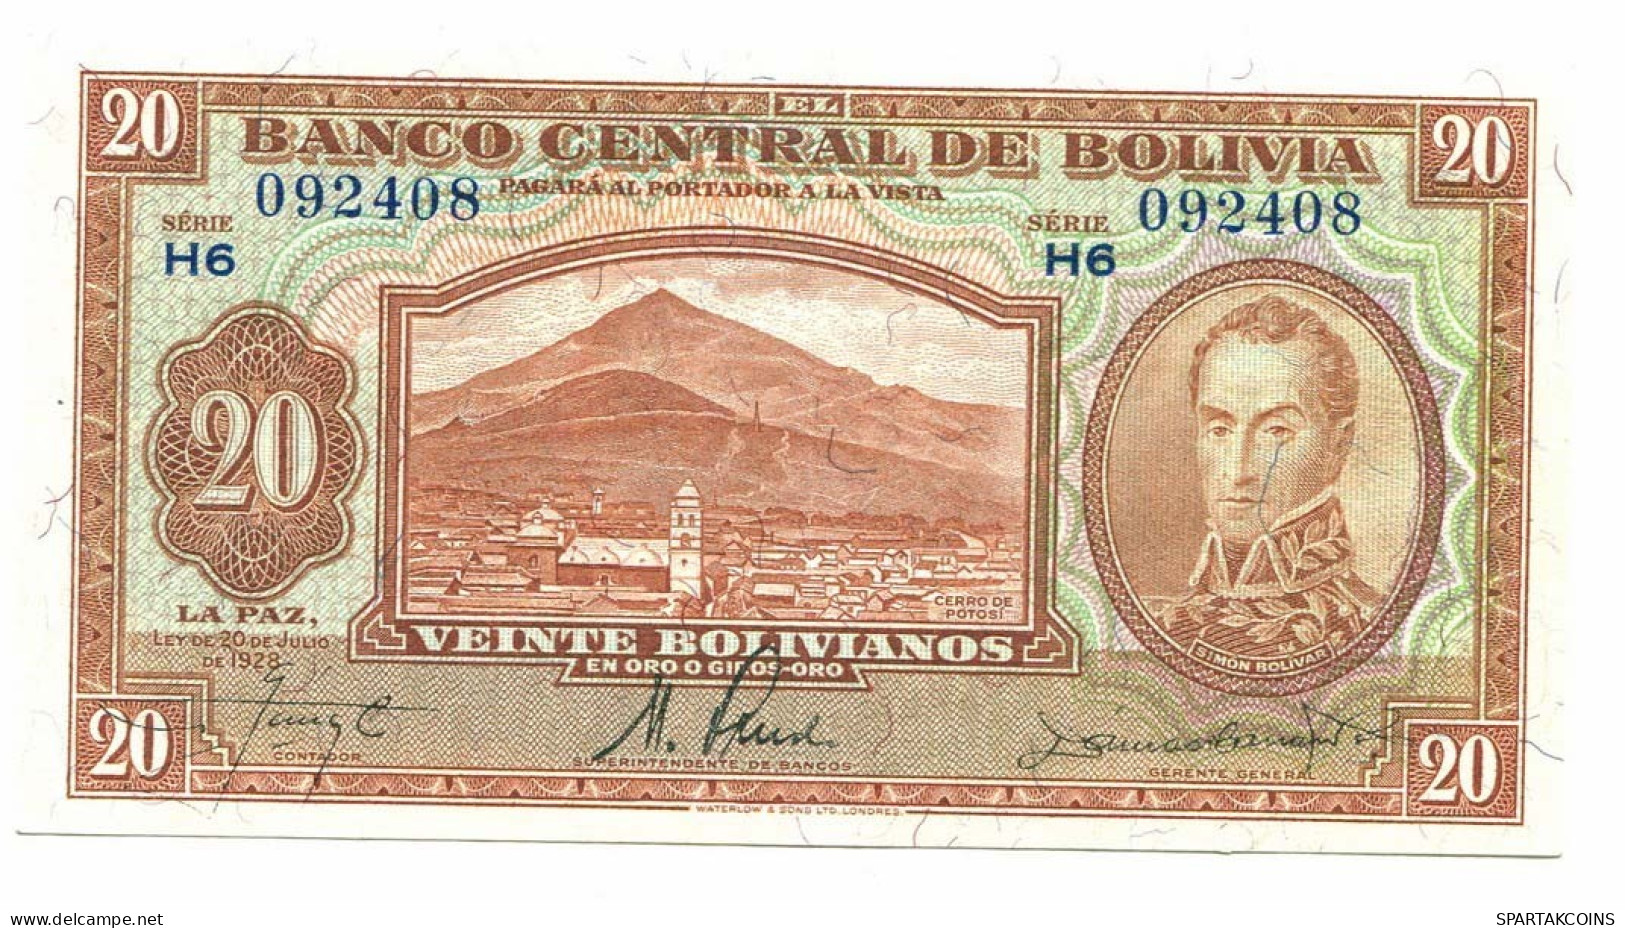 BOLIVIA 20 BOLIVIANOS 1928 SERIE H6 AUNC Paper Money Banknote #P10797.4 - [11] Emisiones Locales